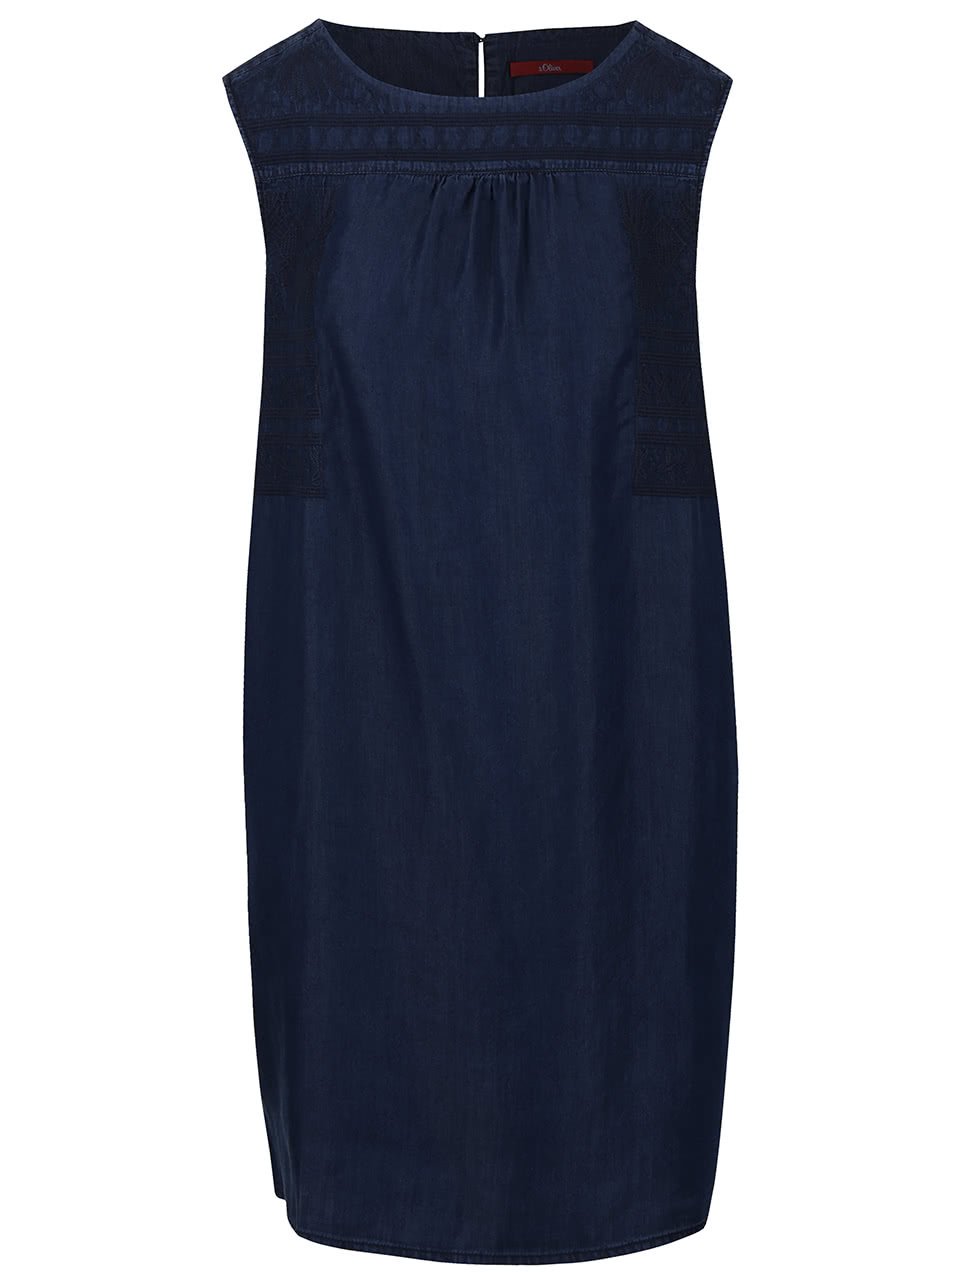 Tmavě modré šaty s vyšitým vzorem s.Oliver